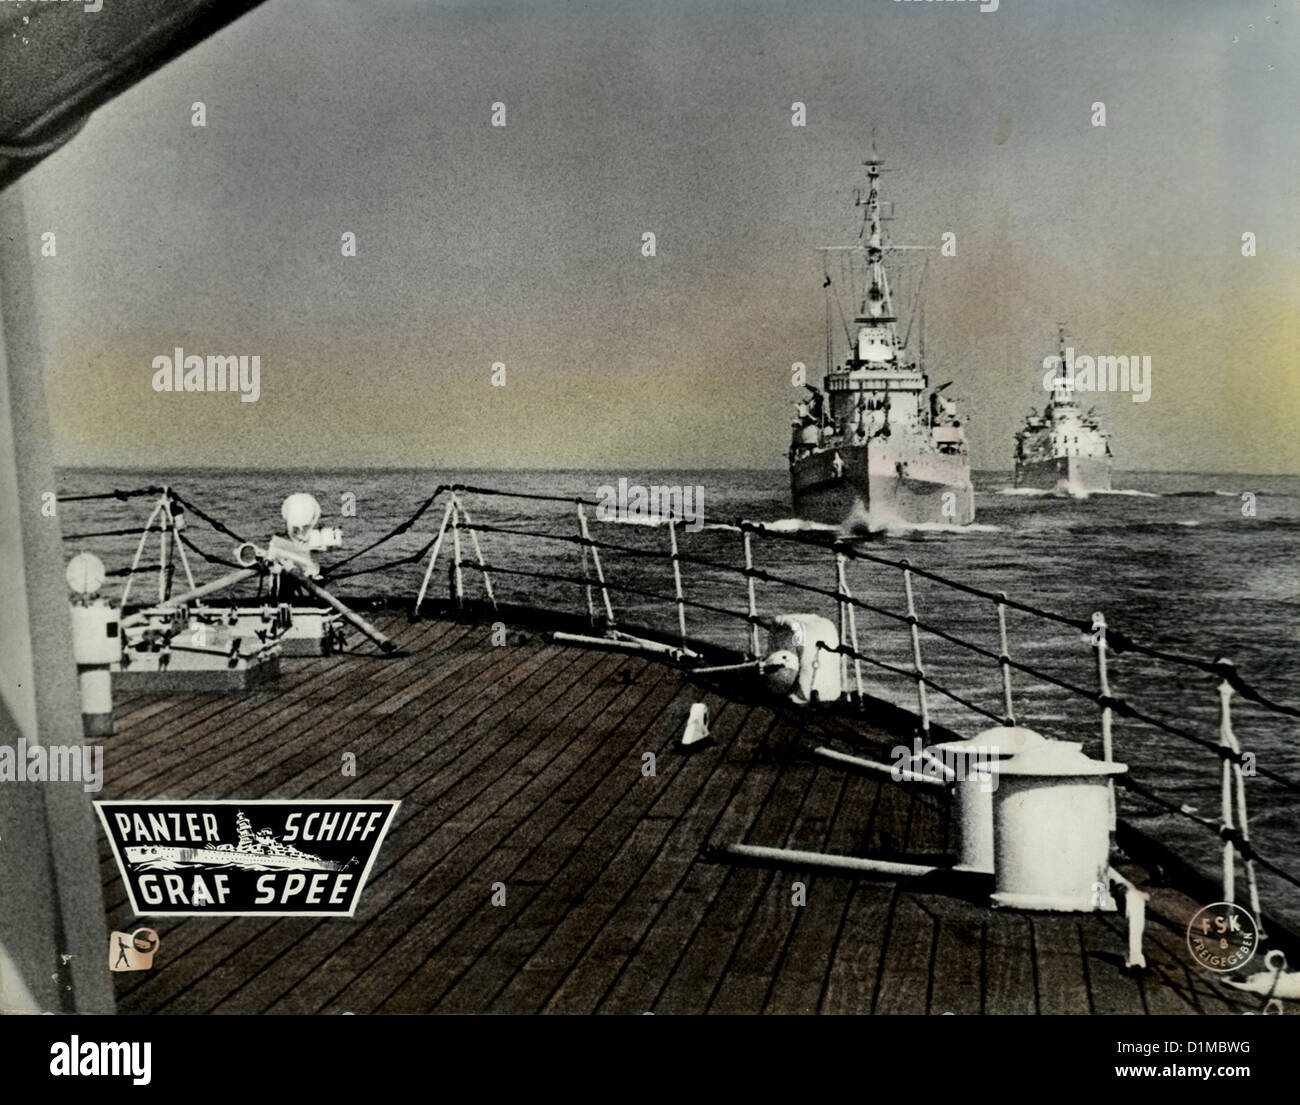 Panzerschiff Graf Spee Batalla del Río de La Plata, el Szenenbild -- Foto de stock